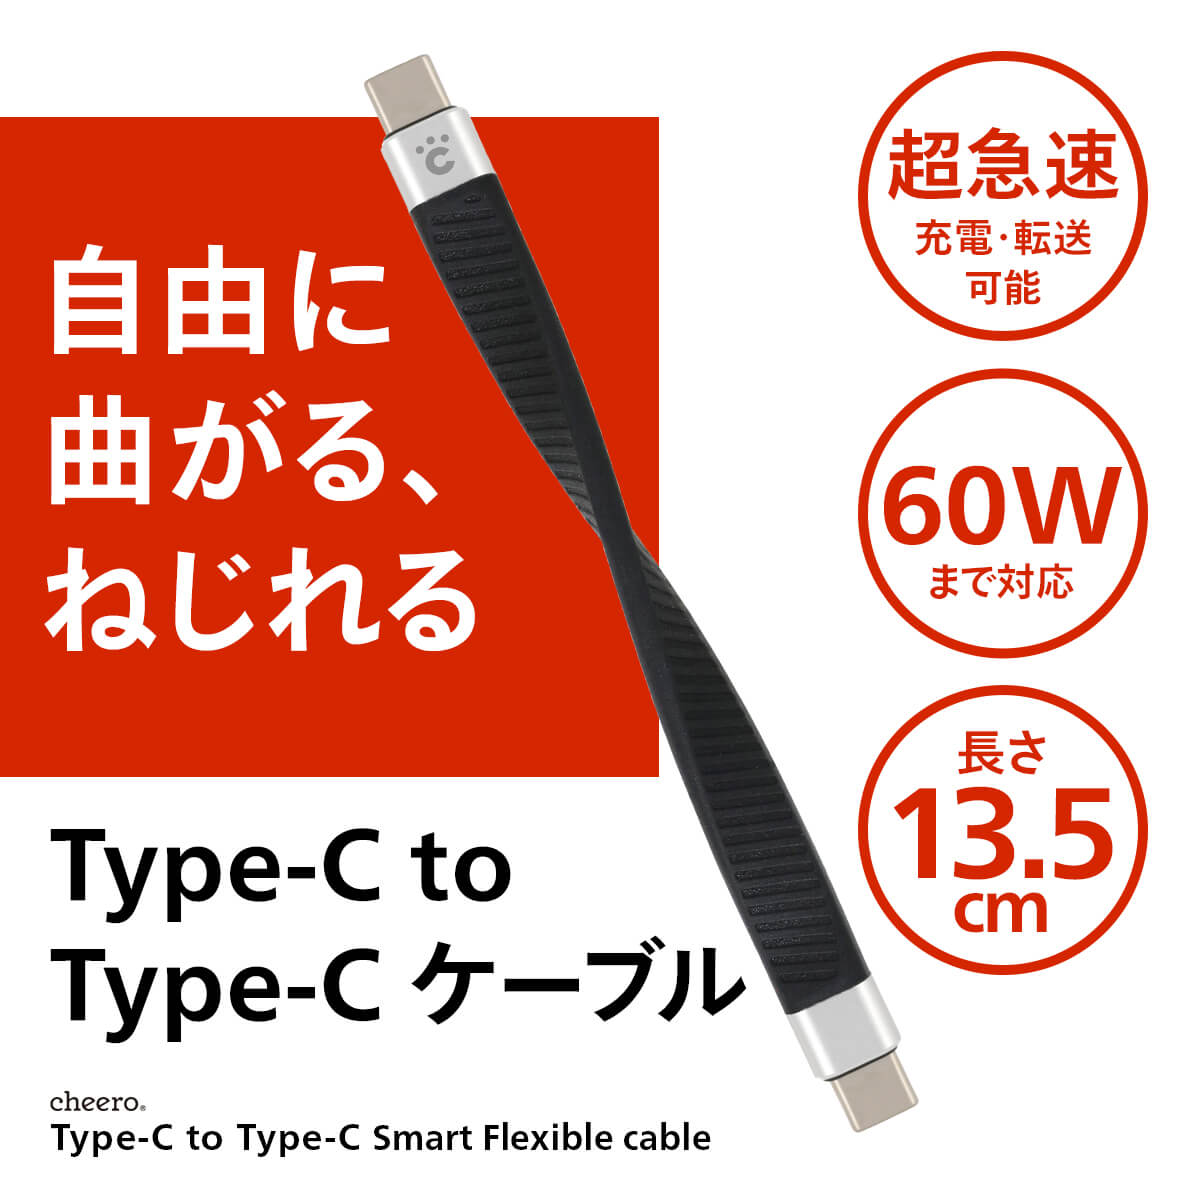 【販売終了】cheero Type-C to Type-C Smart Flexible Cable